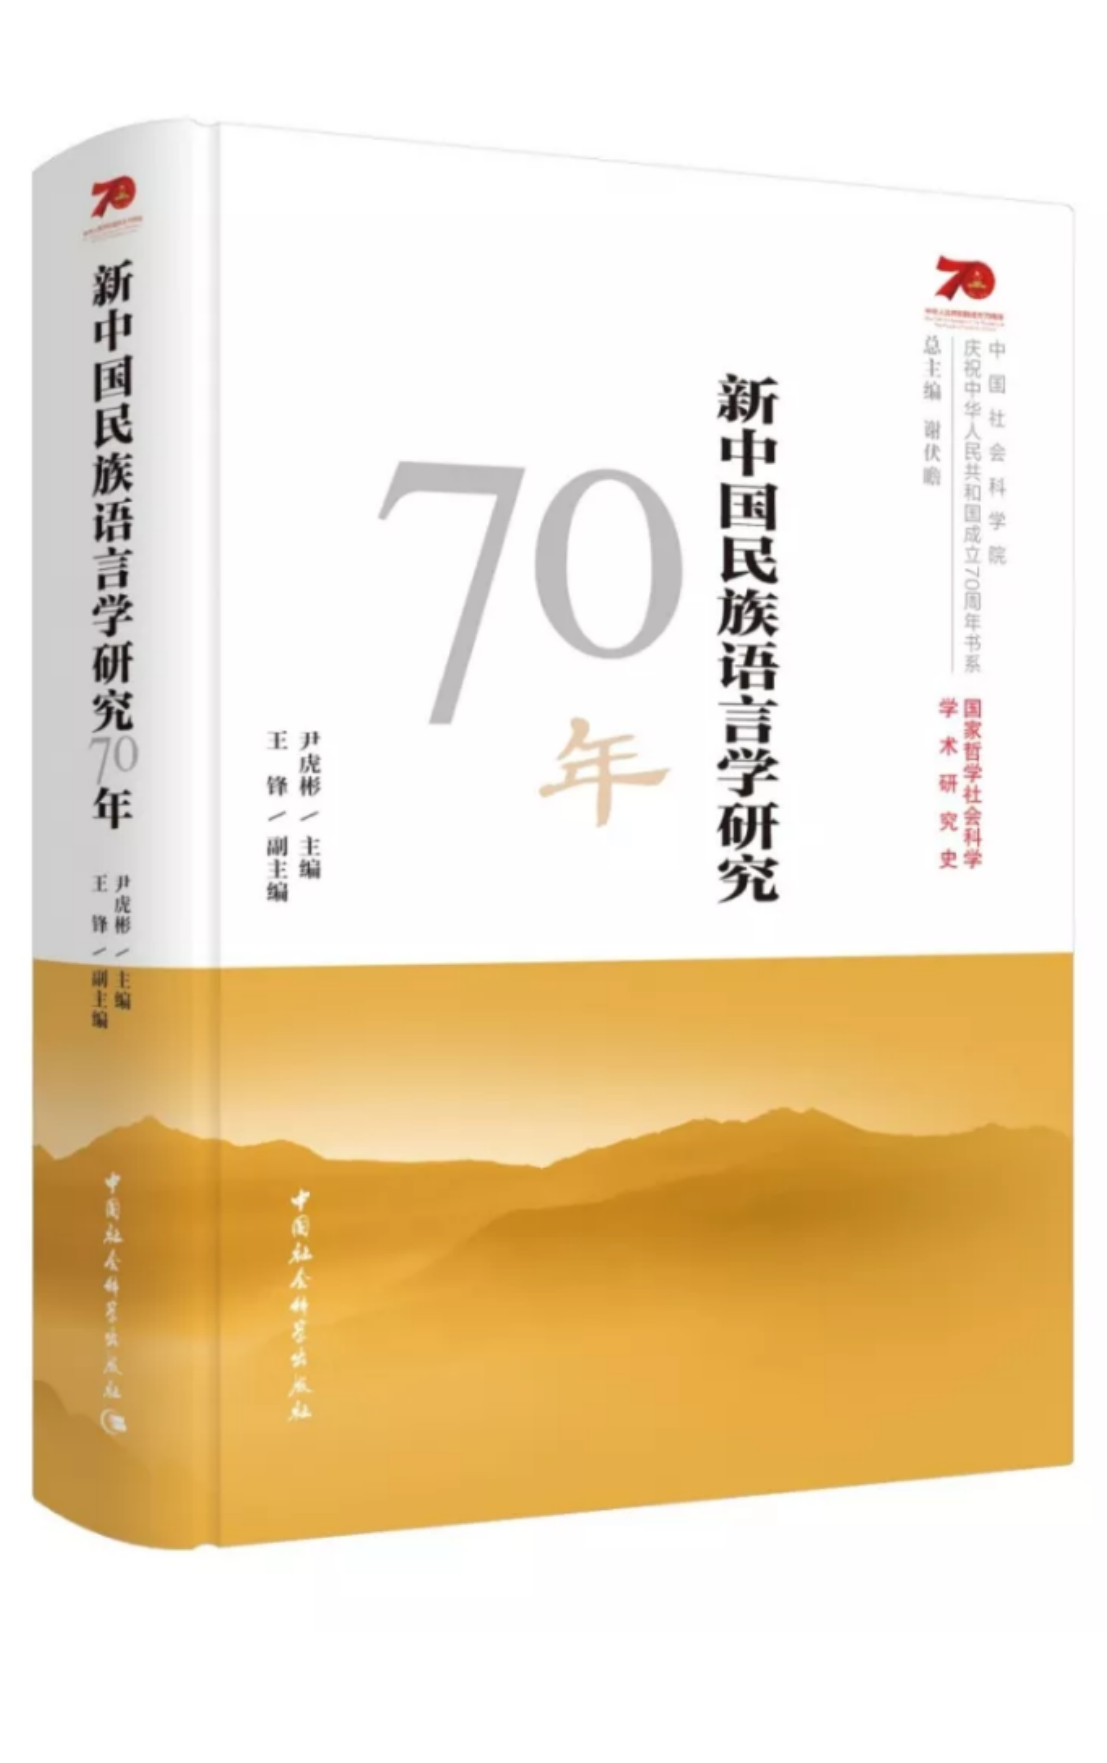 《新中国民族语言学研究70年》2019年出版